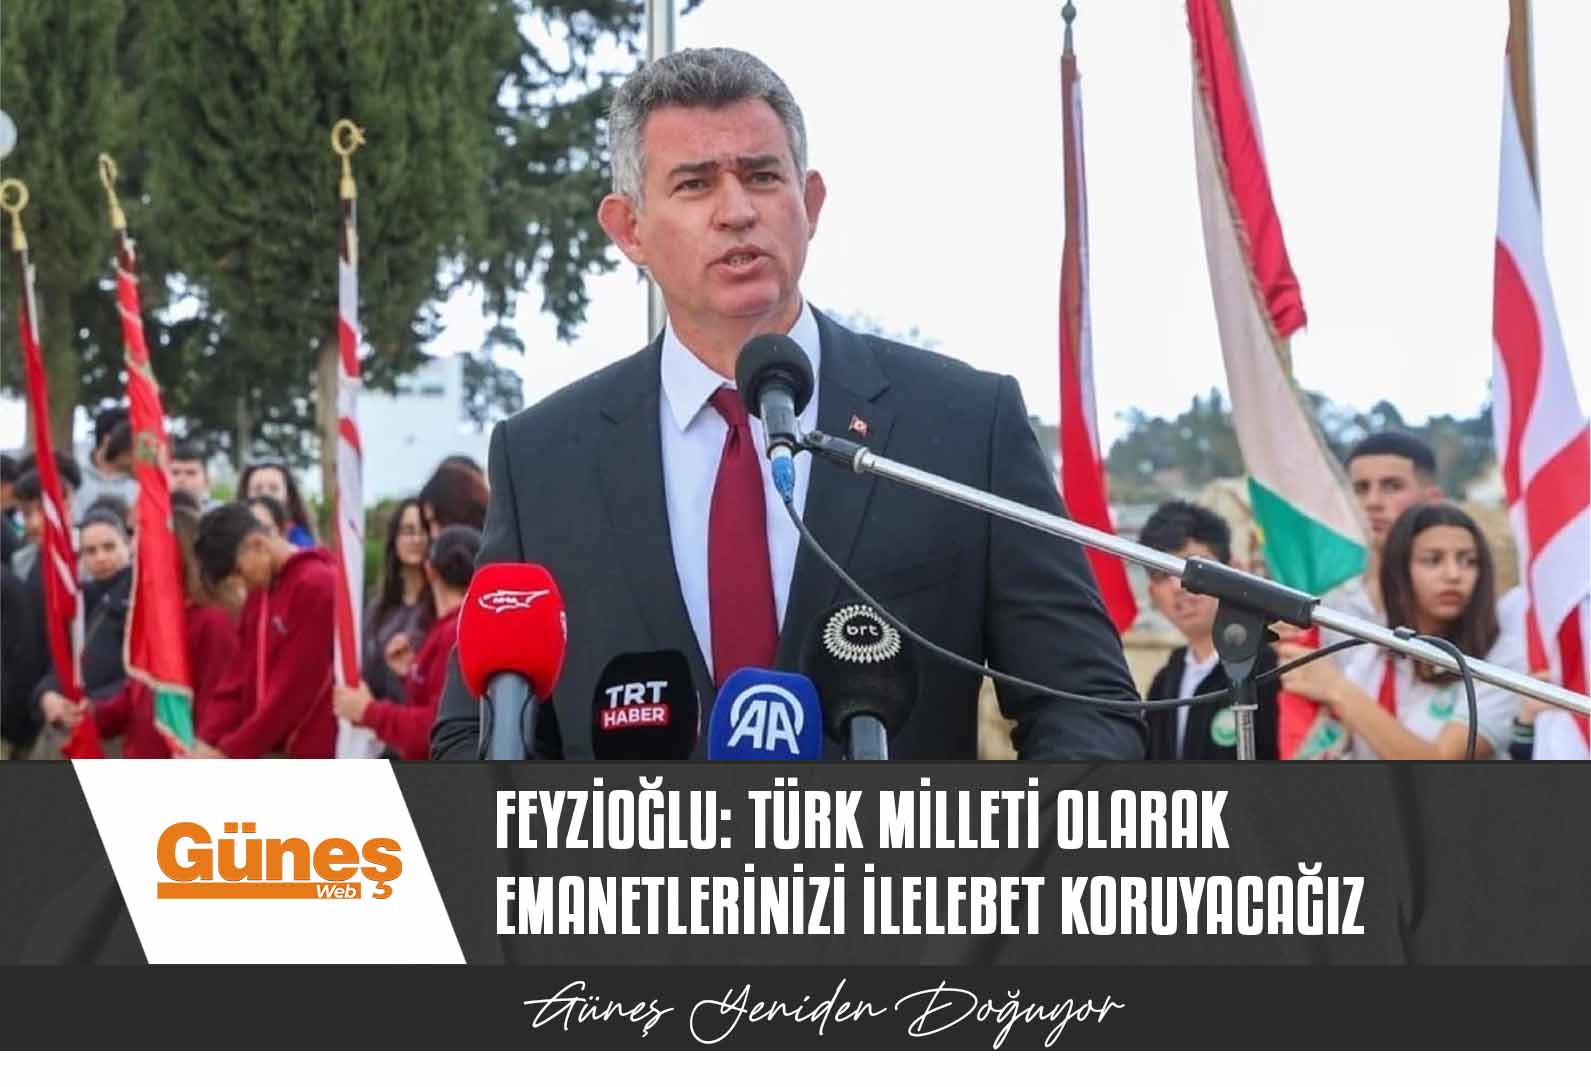 Metin Feyzioğlu: Türk milleti olarak emanetlerinizi ilelebet koruyacağız